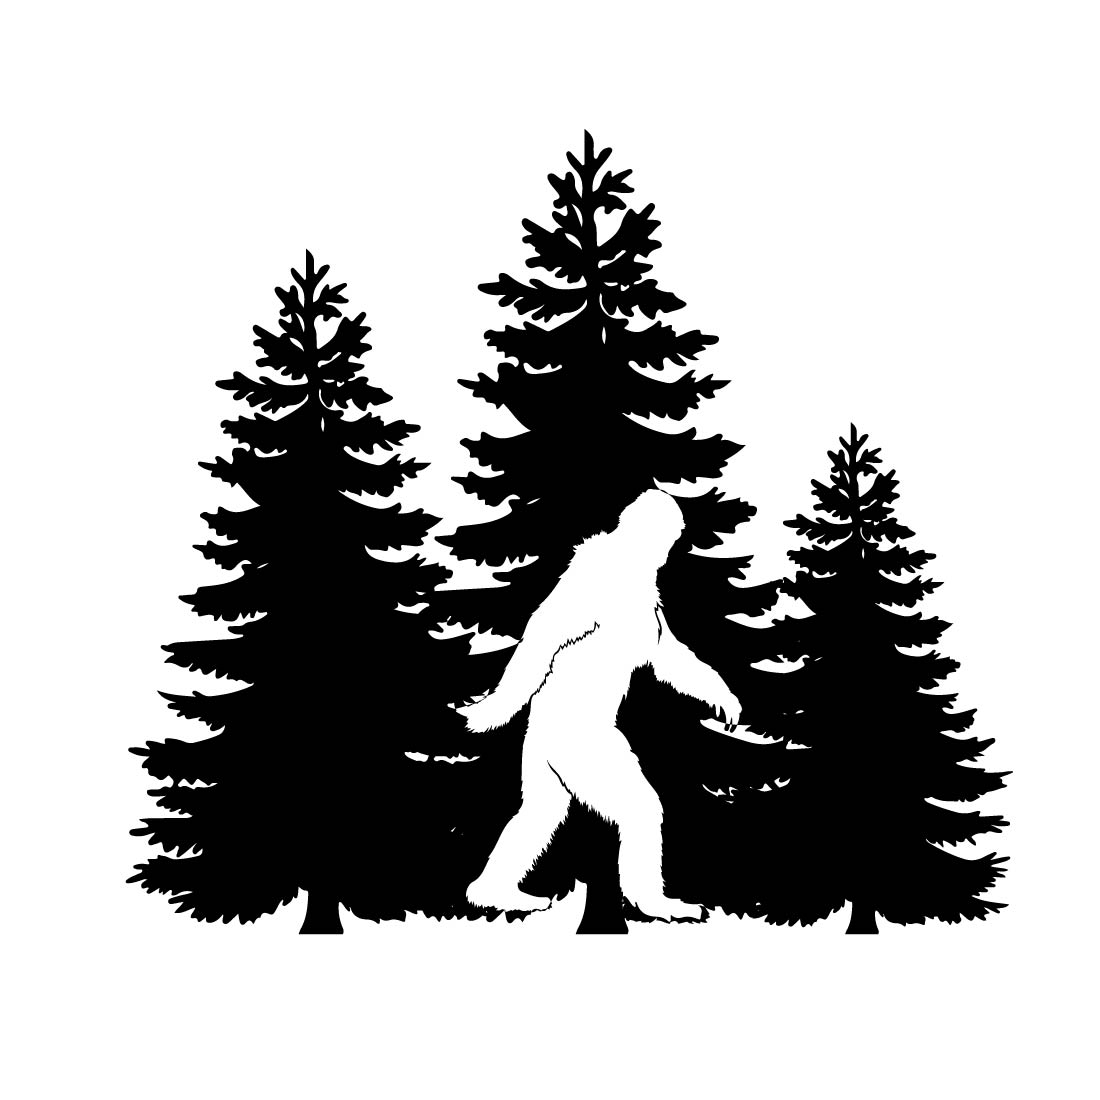 Bigfoot Svg, Bigfoot Sign, Sasquatch Svg, Big Foot Svg, Bigfoot Sticker, Camping Svg, Adventure Svg, Hunting Svg, Mountains Svg, Forest Svg preview image.